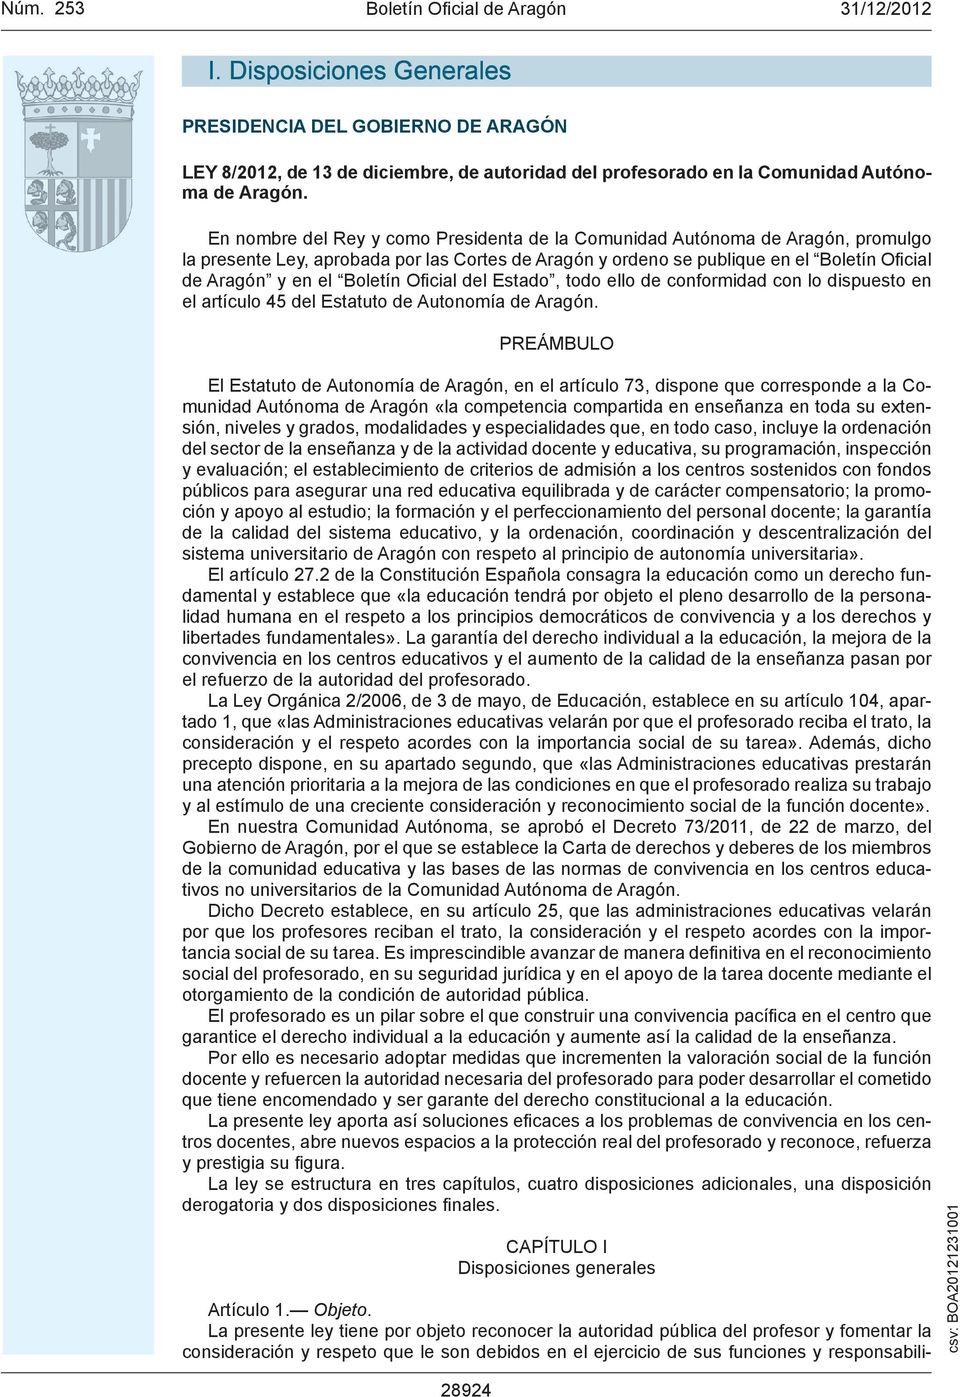 Boletín Ofi cial del Estado, todo ello de conformidad con lo dispuesto en el artículo 45 del Estatuto de Autonomía de Aragón.